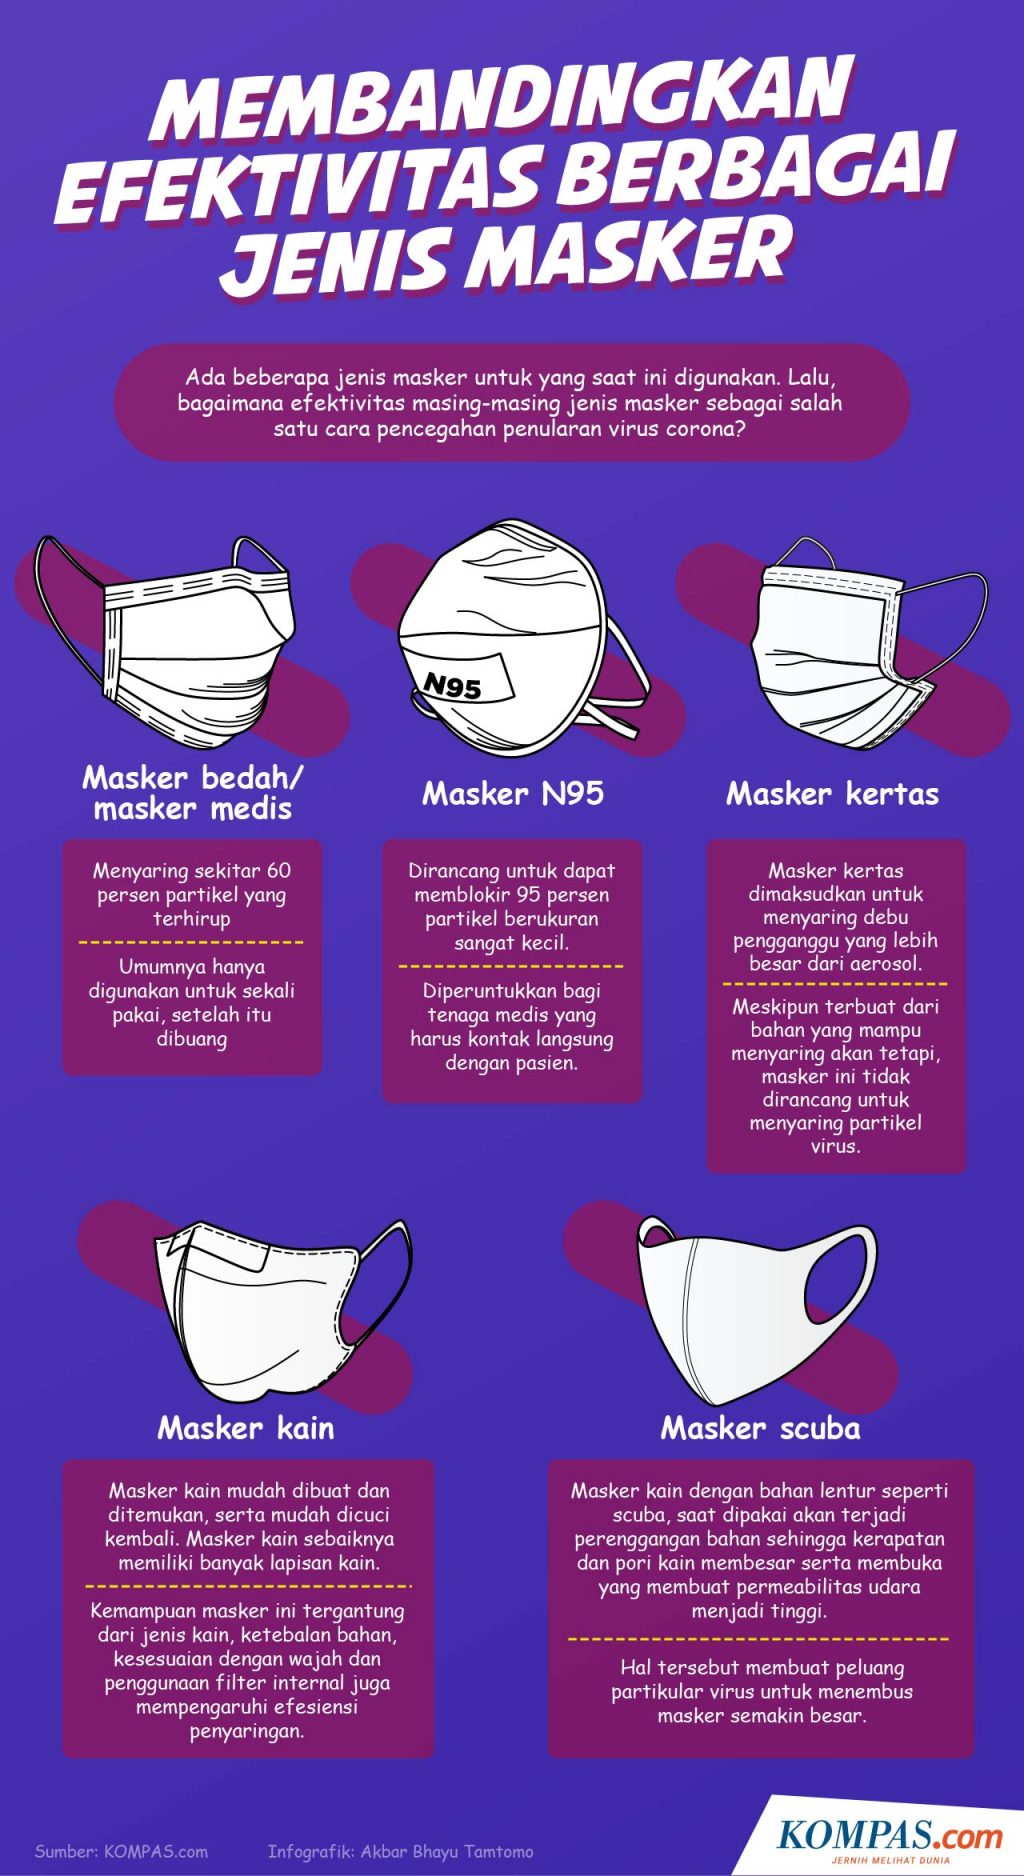 Banyak latihan masker bedah dibuat sebagai masker tali dengan pencabutan kawat, menurut pendapat dokter